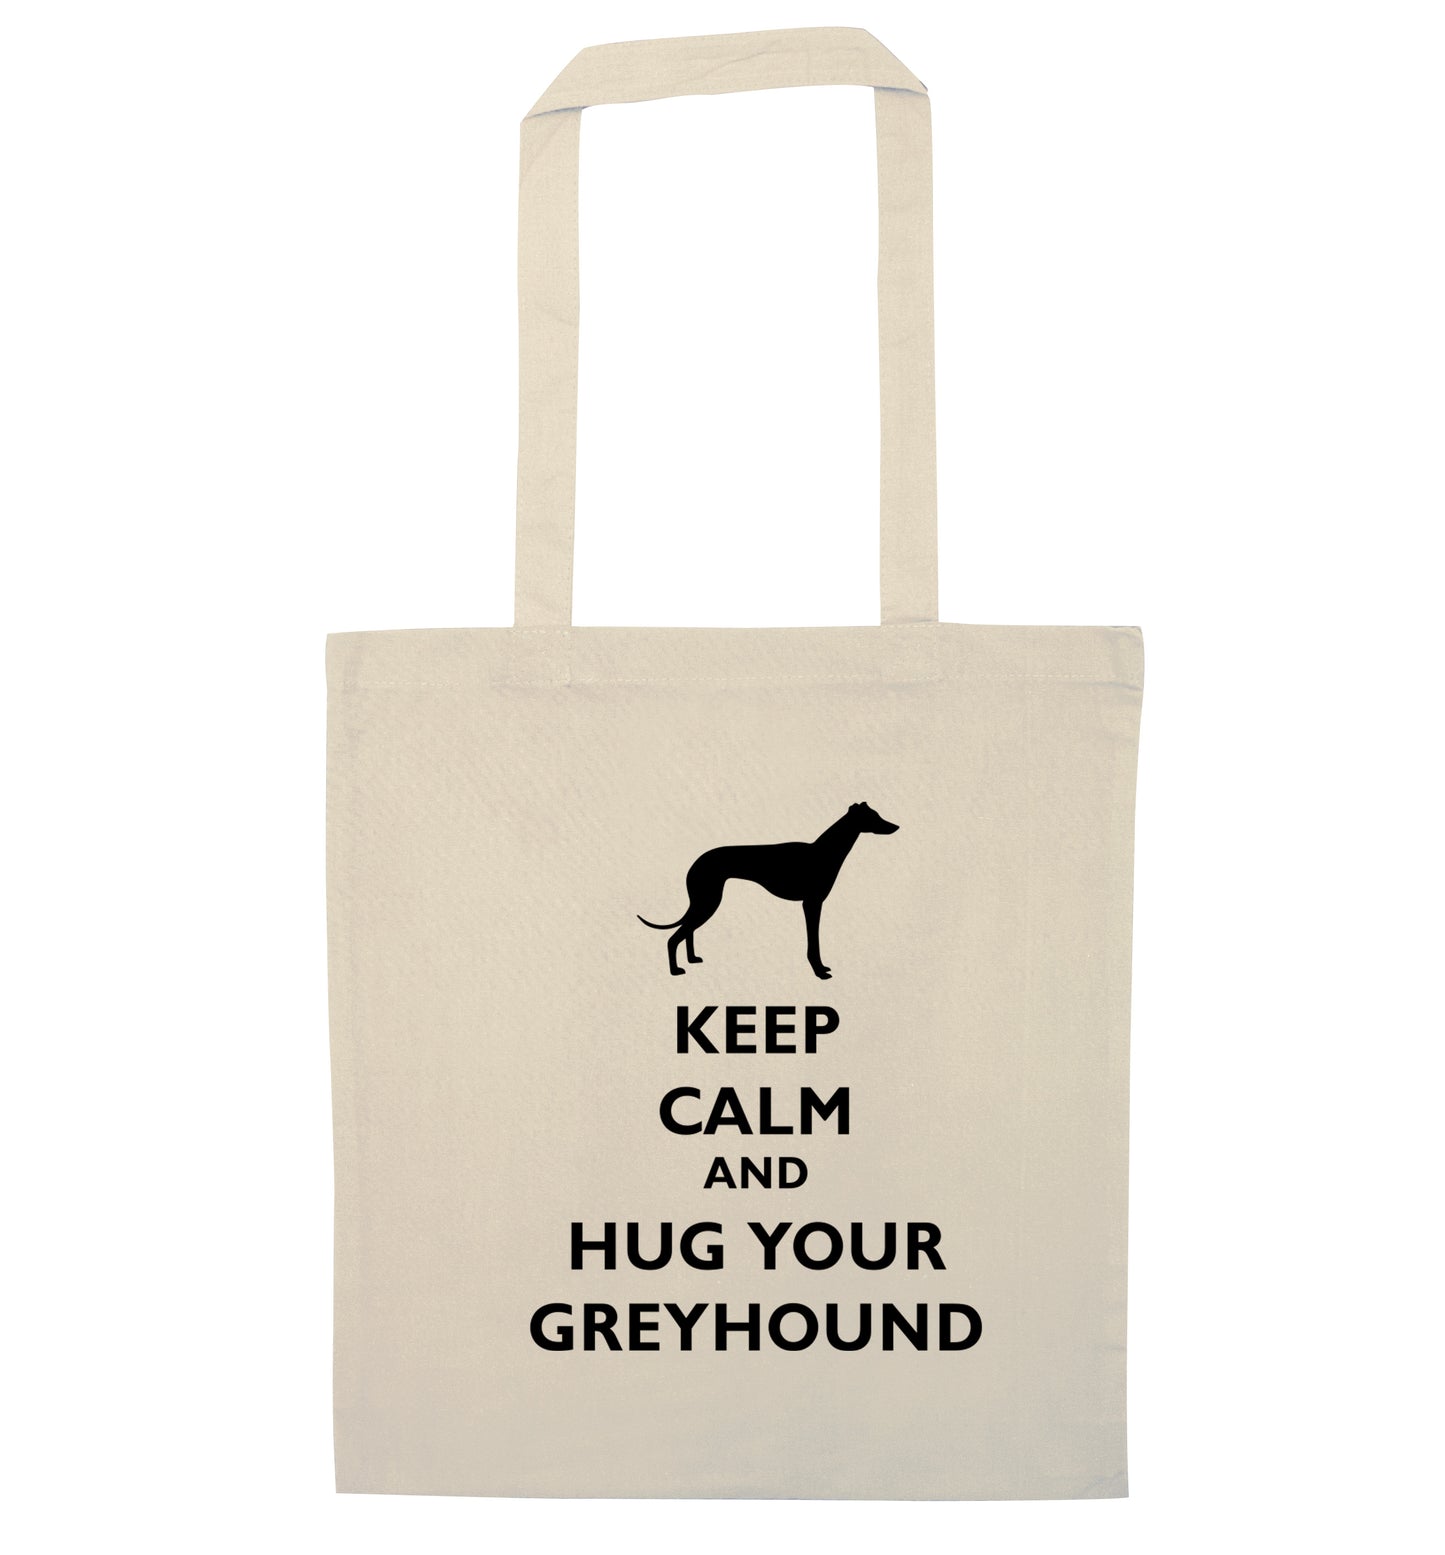 Keep calm and hug your greyhound natural tote bag